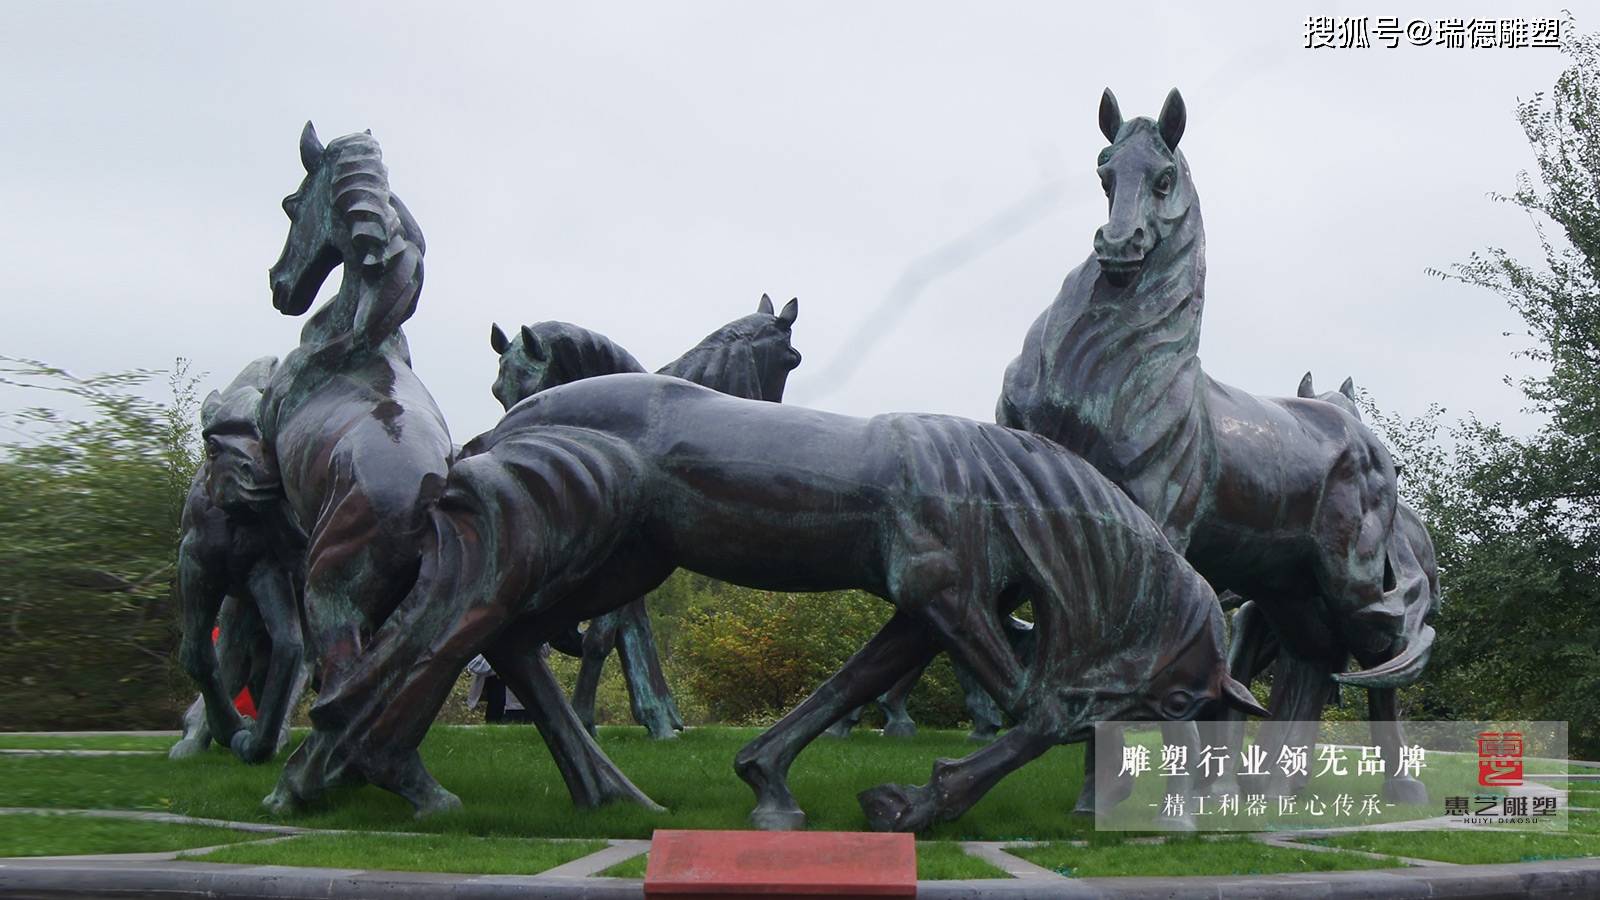 关于马雕塑文化的简介